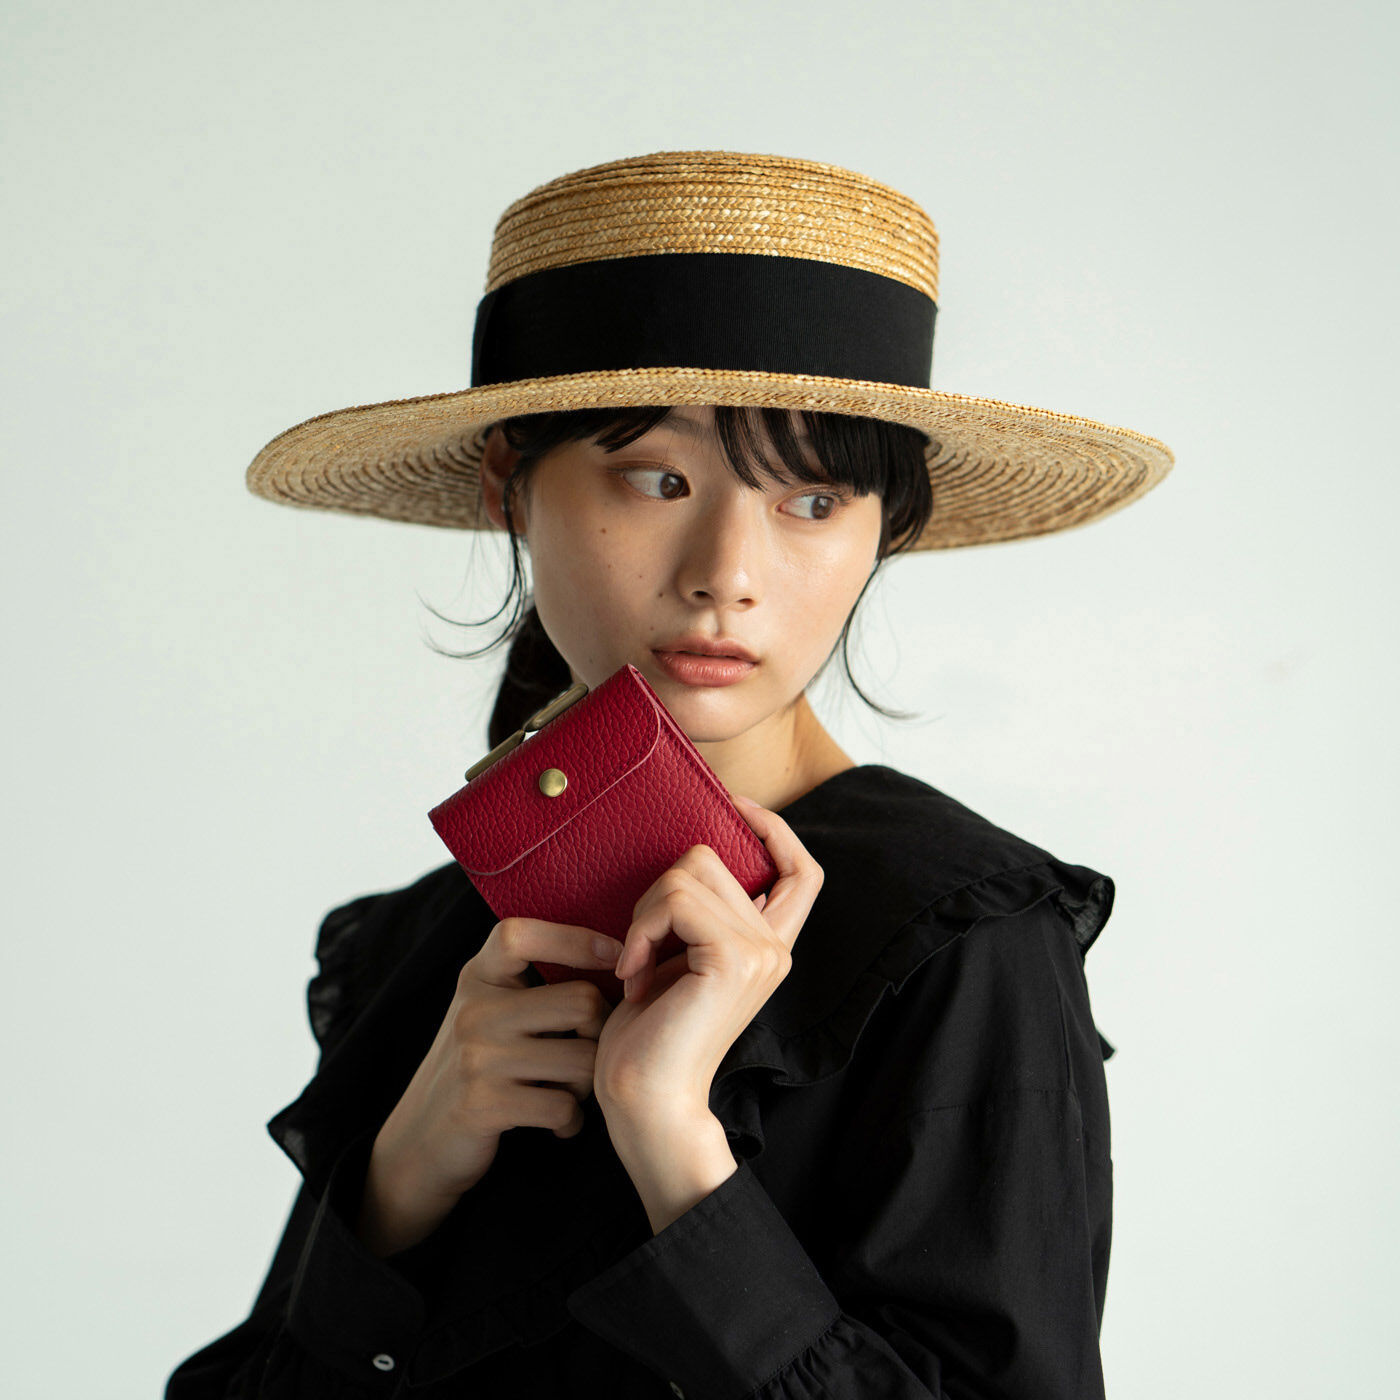 ＆Stories|福岡の鞄作家が作った 職人本革のエンベロープウォレット〈ストロベリー色〉|手にするたび気分が華やぐ、鮮やかなストロベリー色。